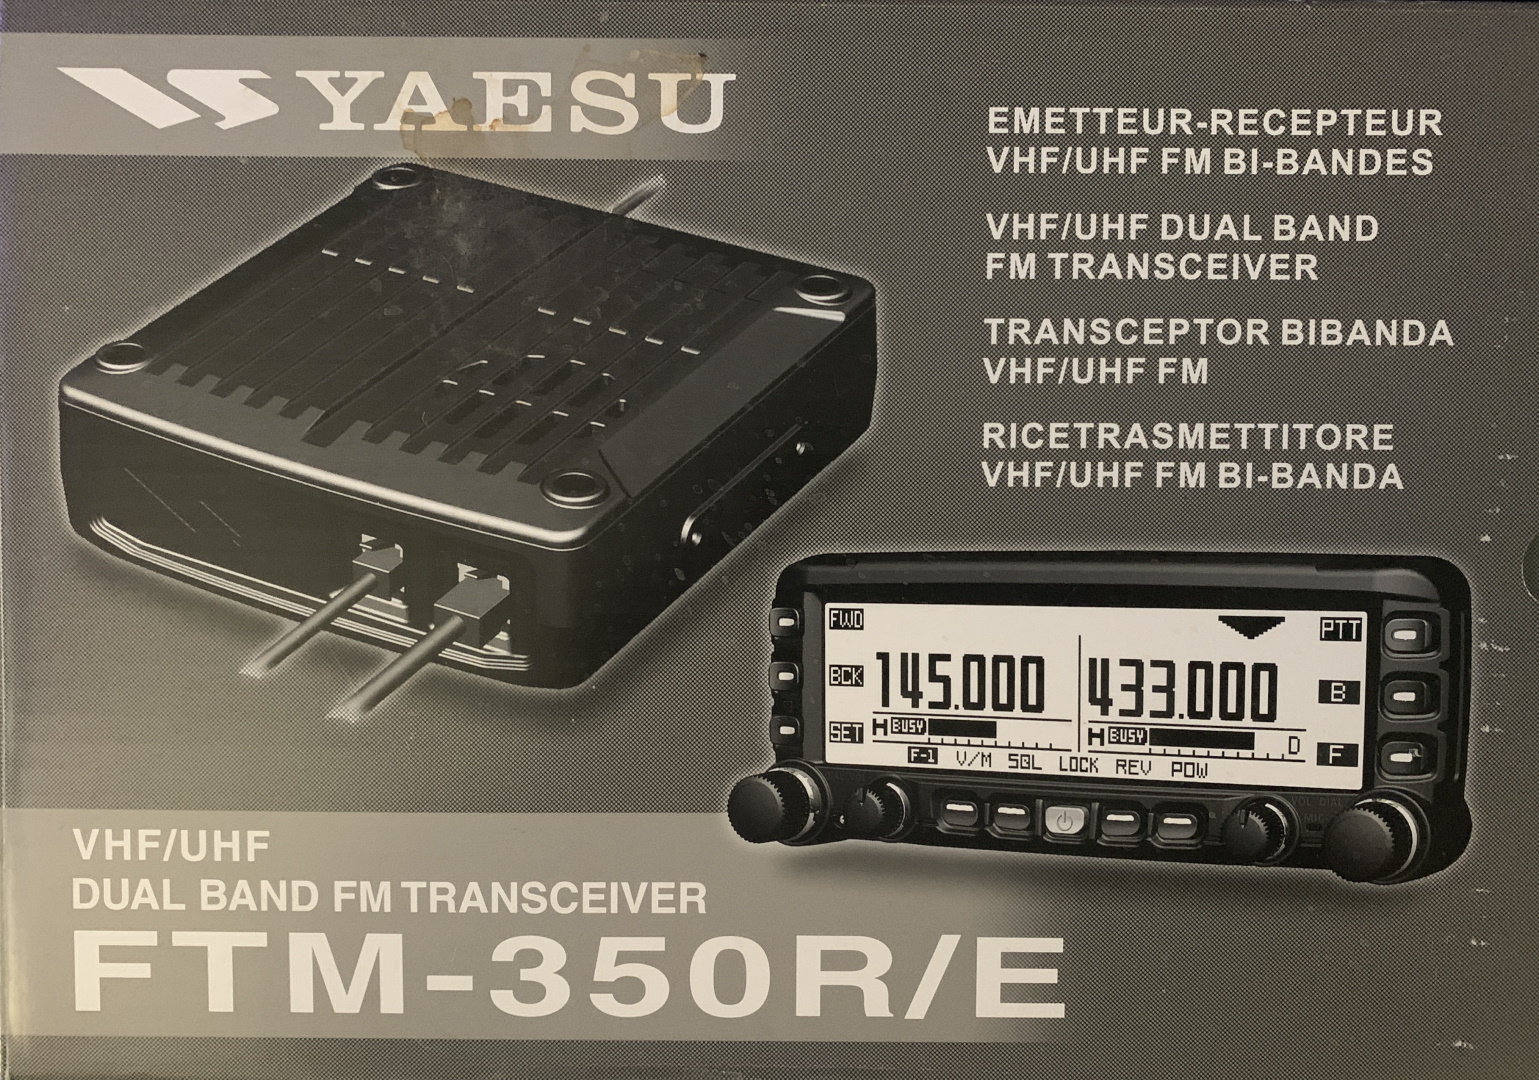 Yaesu FTM-350 R/E Box Top